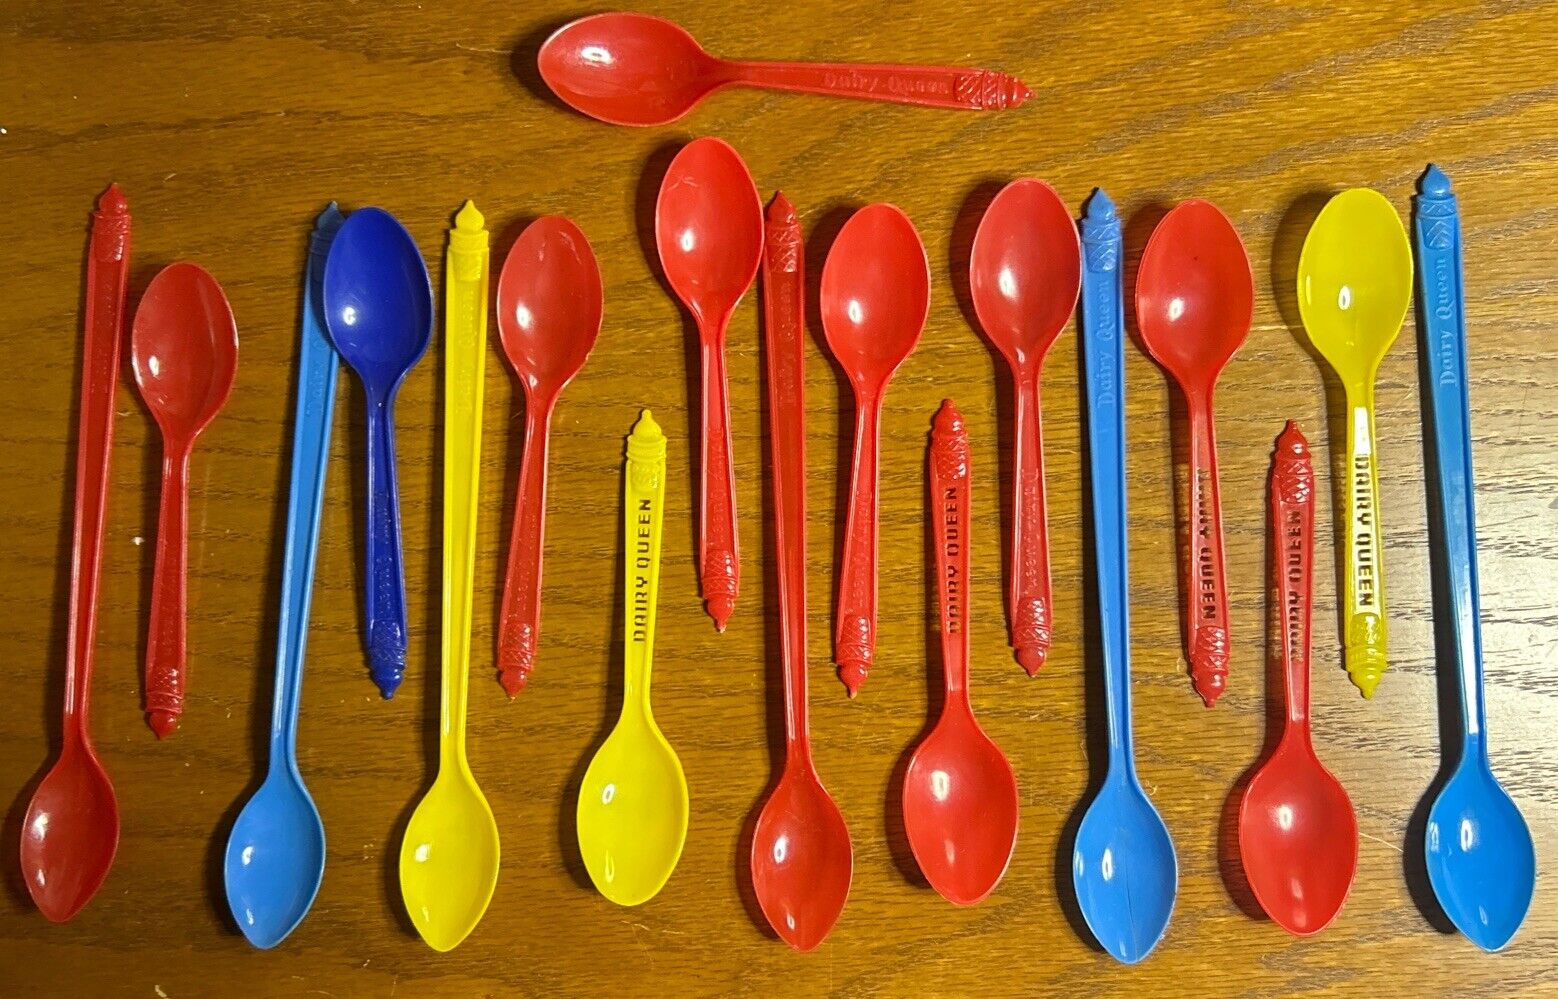 18 Assorted Vintage Dairy Queen Plastic Spoons